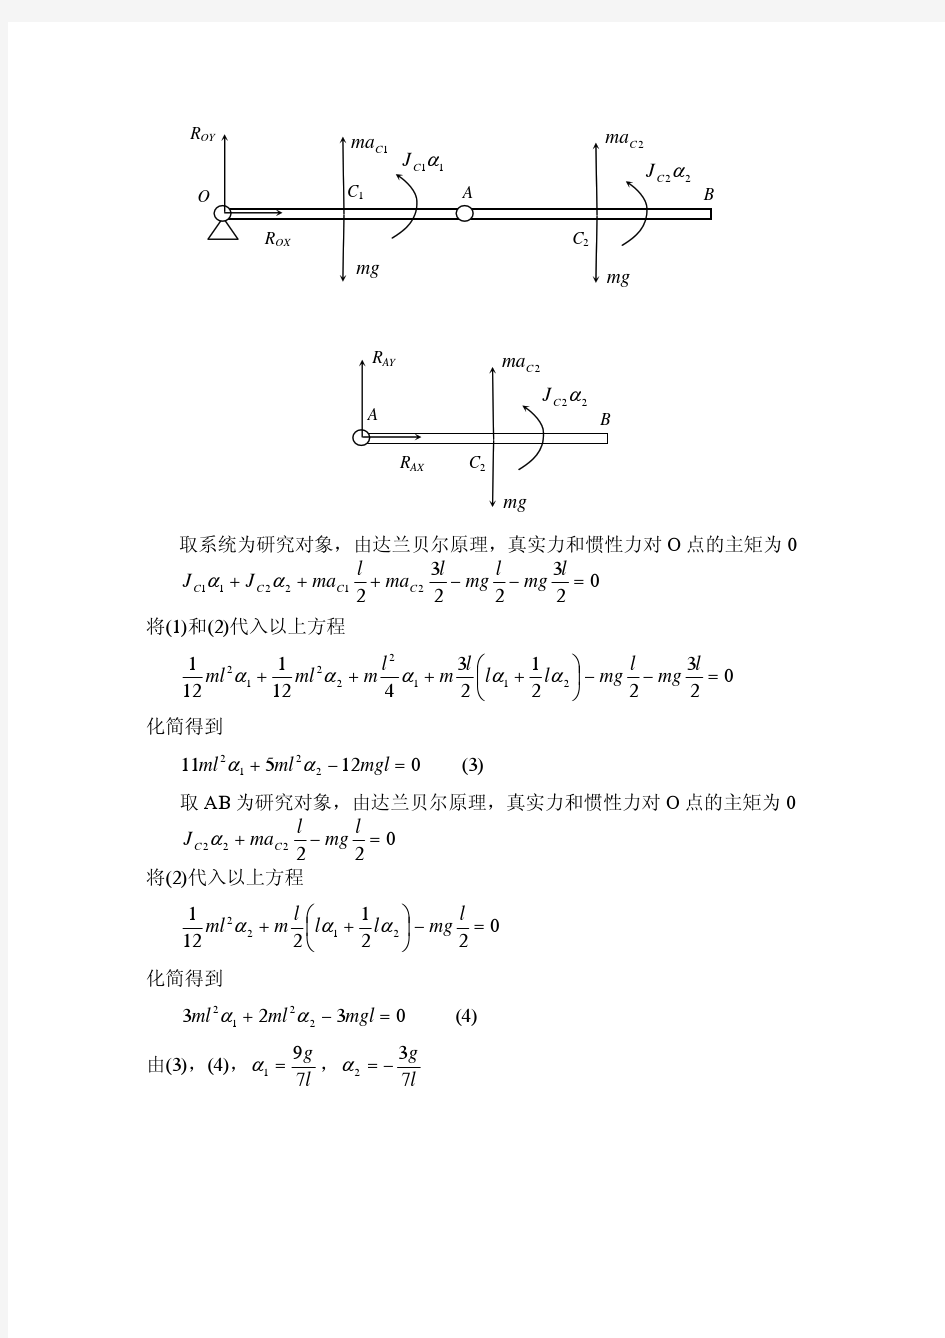 上海交大2004年机动理论力学期末考试试题解答